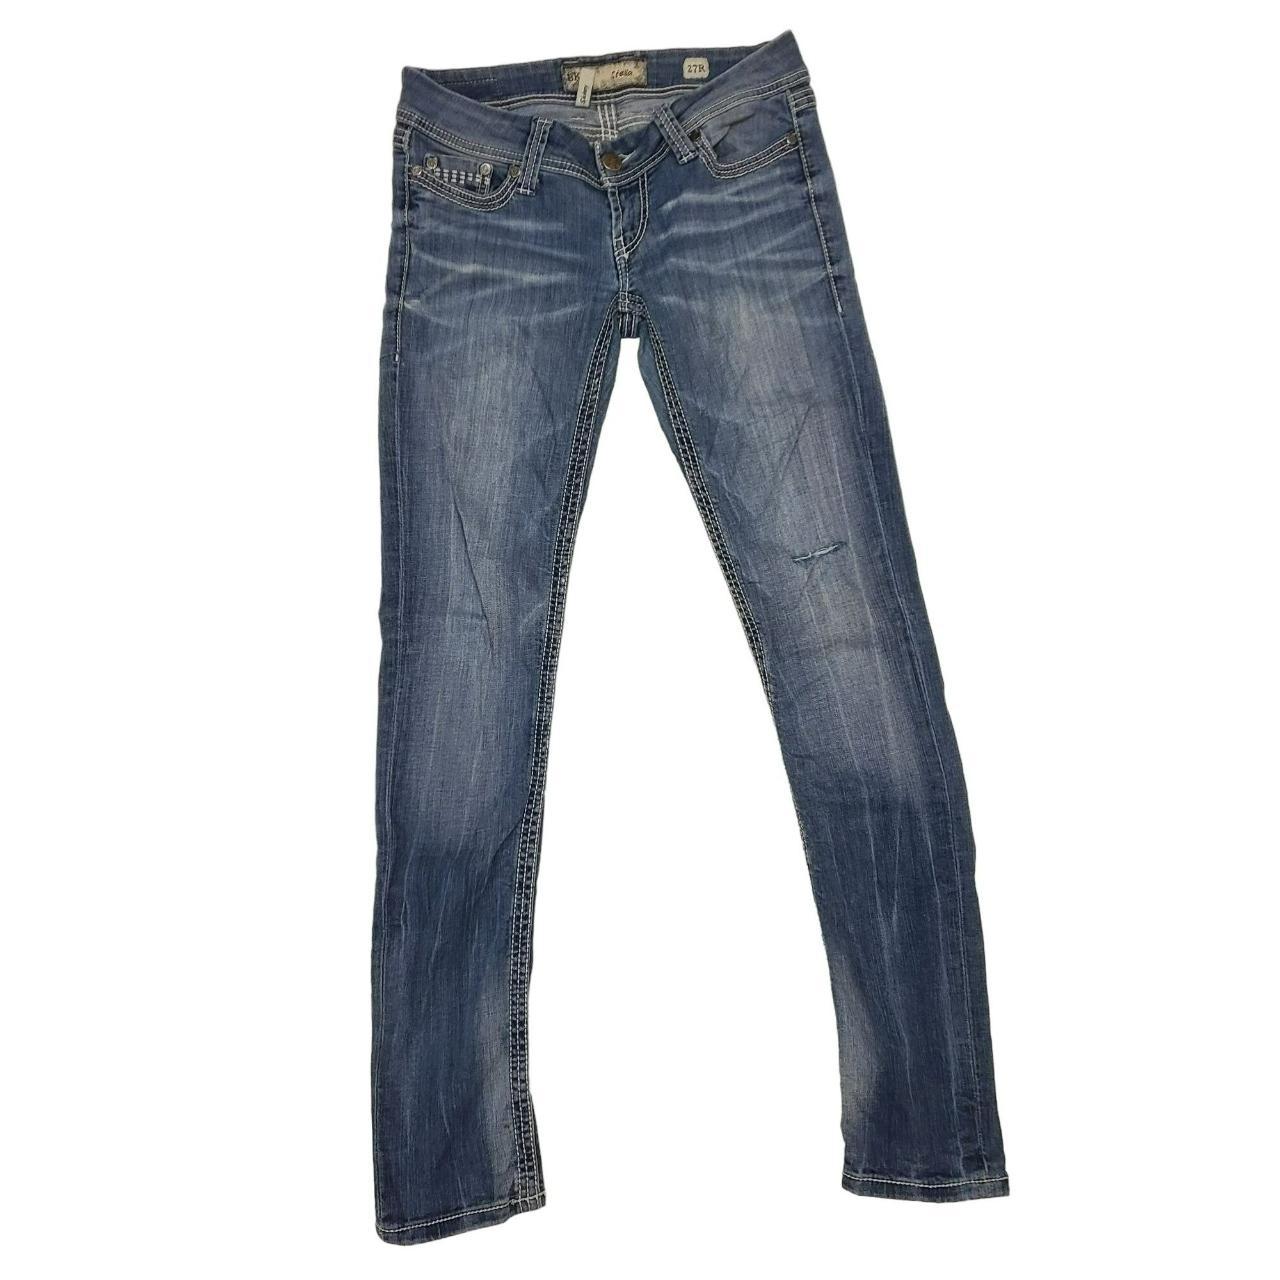 BKE Stella Skinny Jeans Denim Light Wash Women's 27R... - Depop